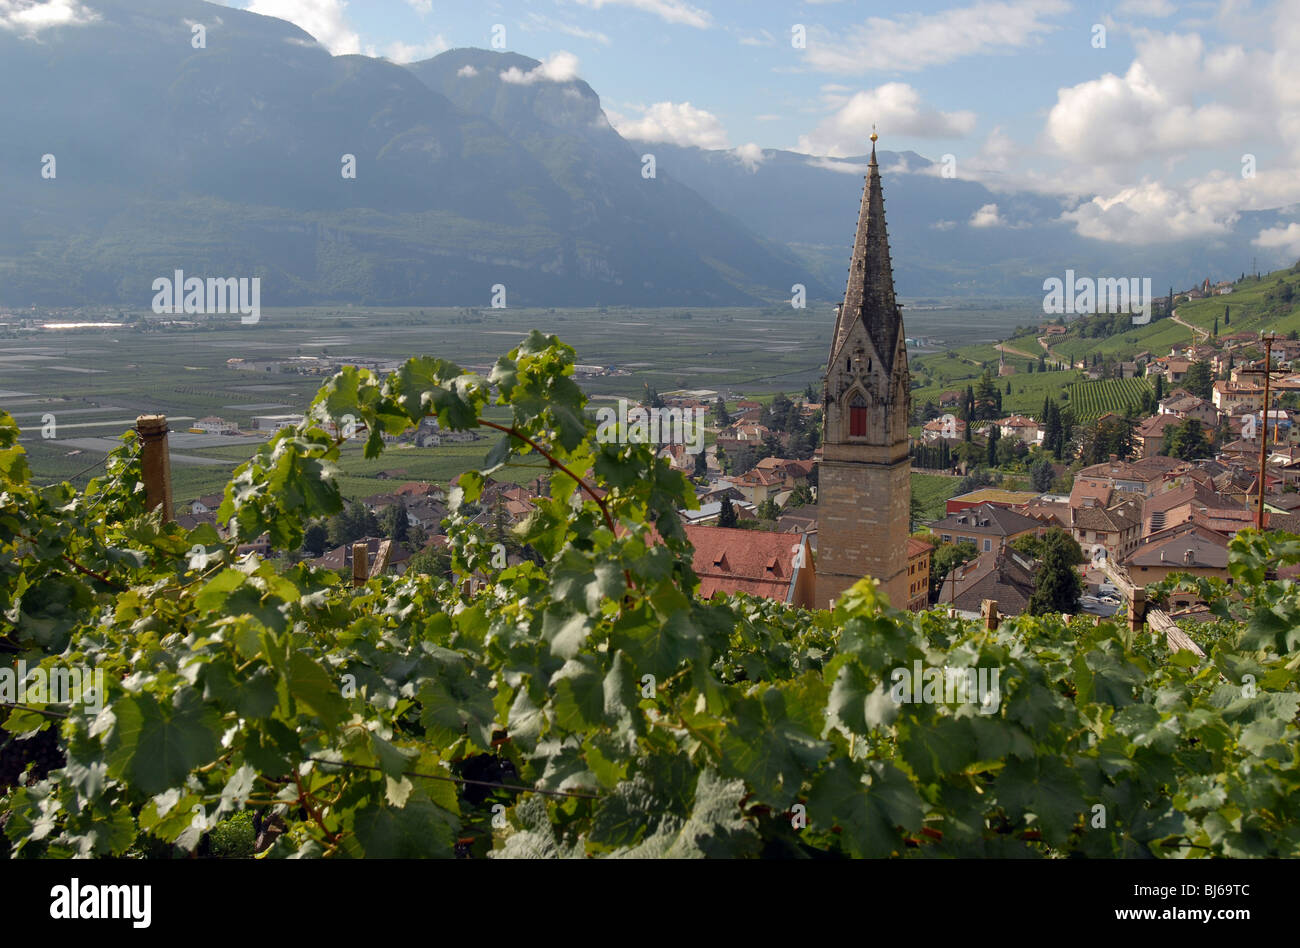 View of an Italian village, Trentino-Alto Adige, Italy Stock Photo